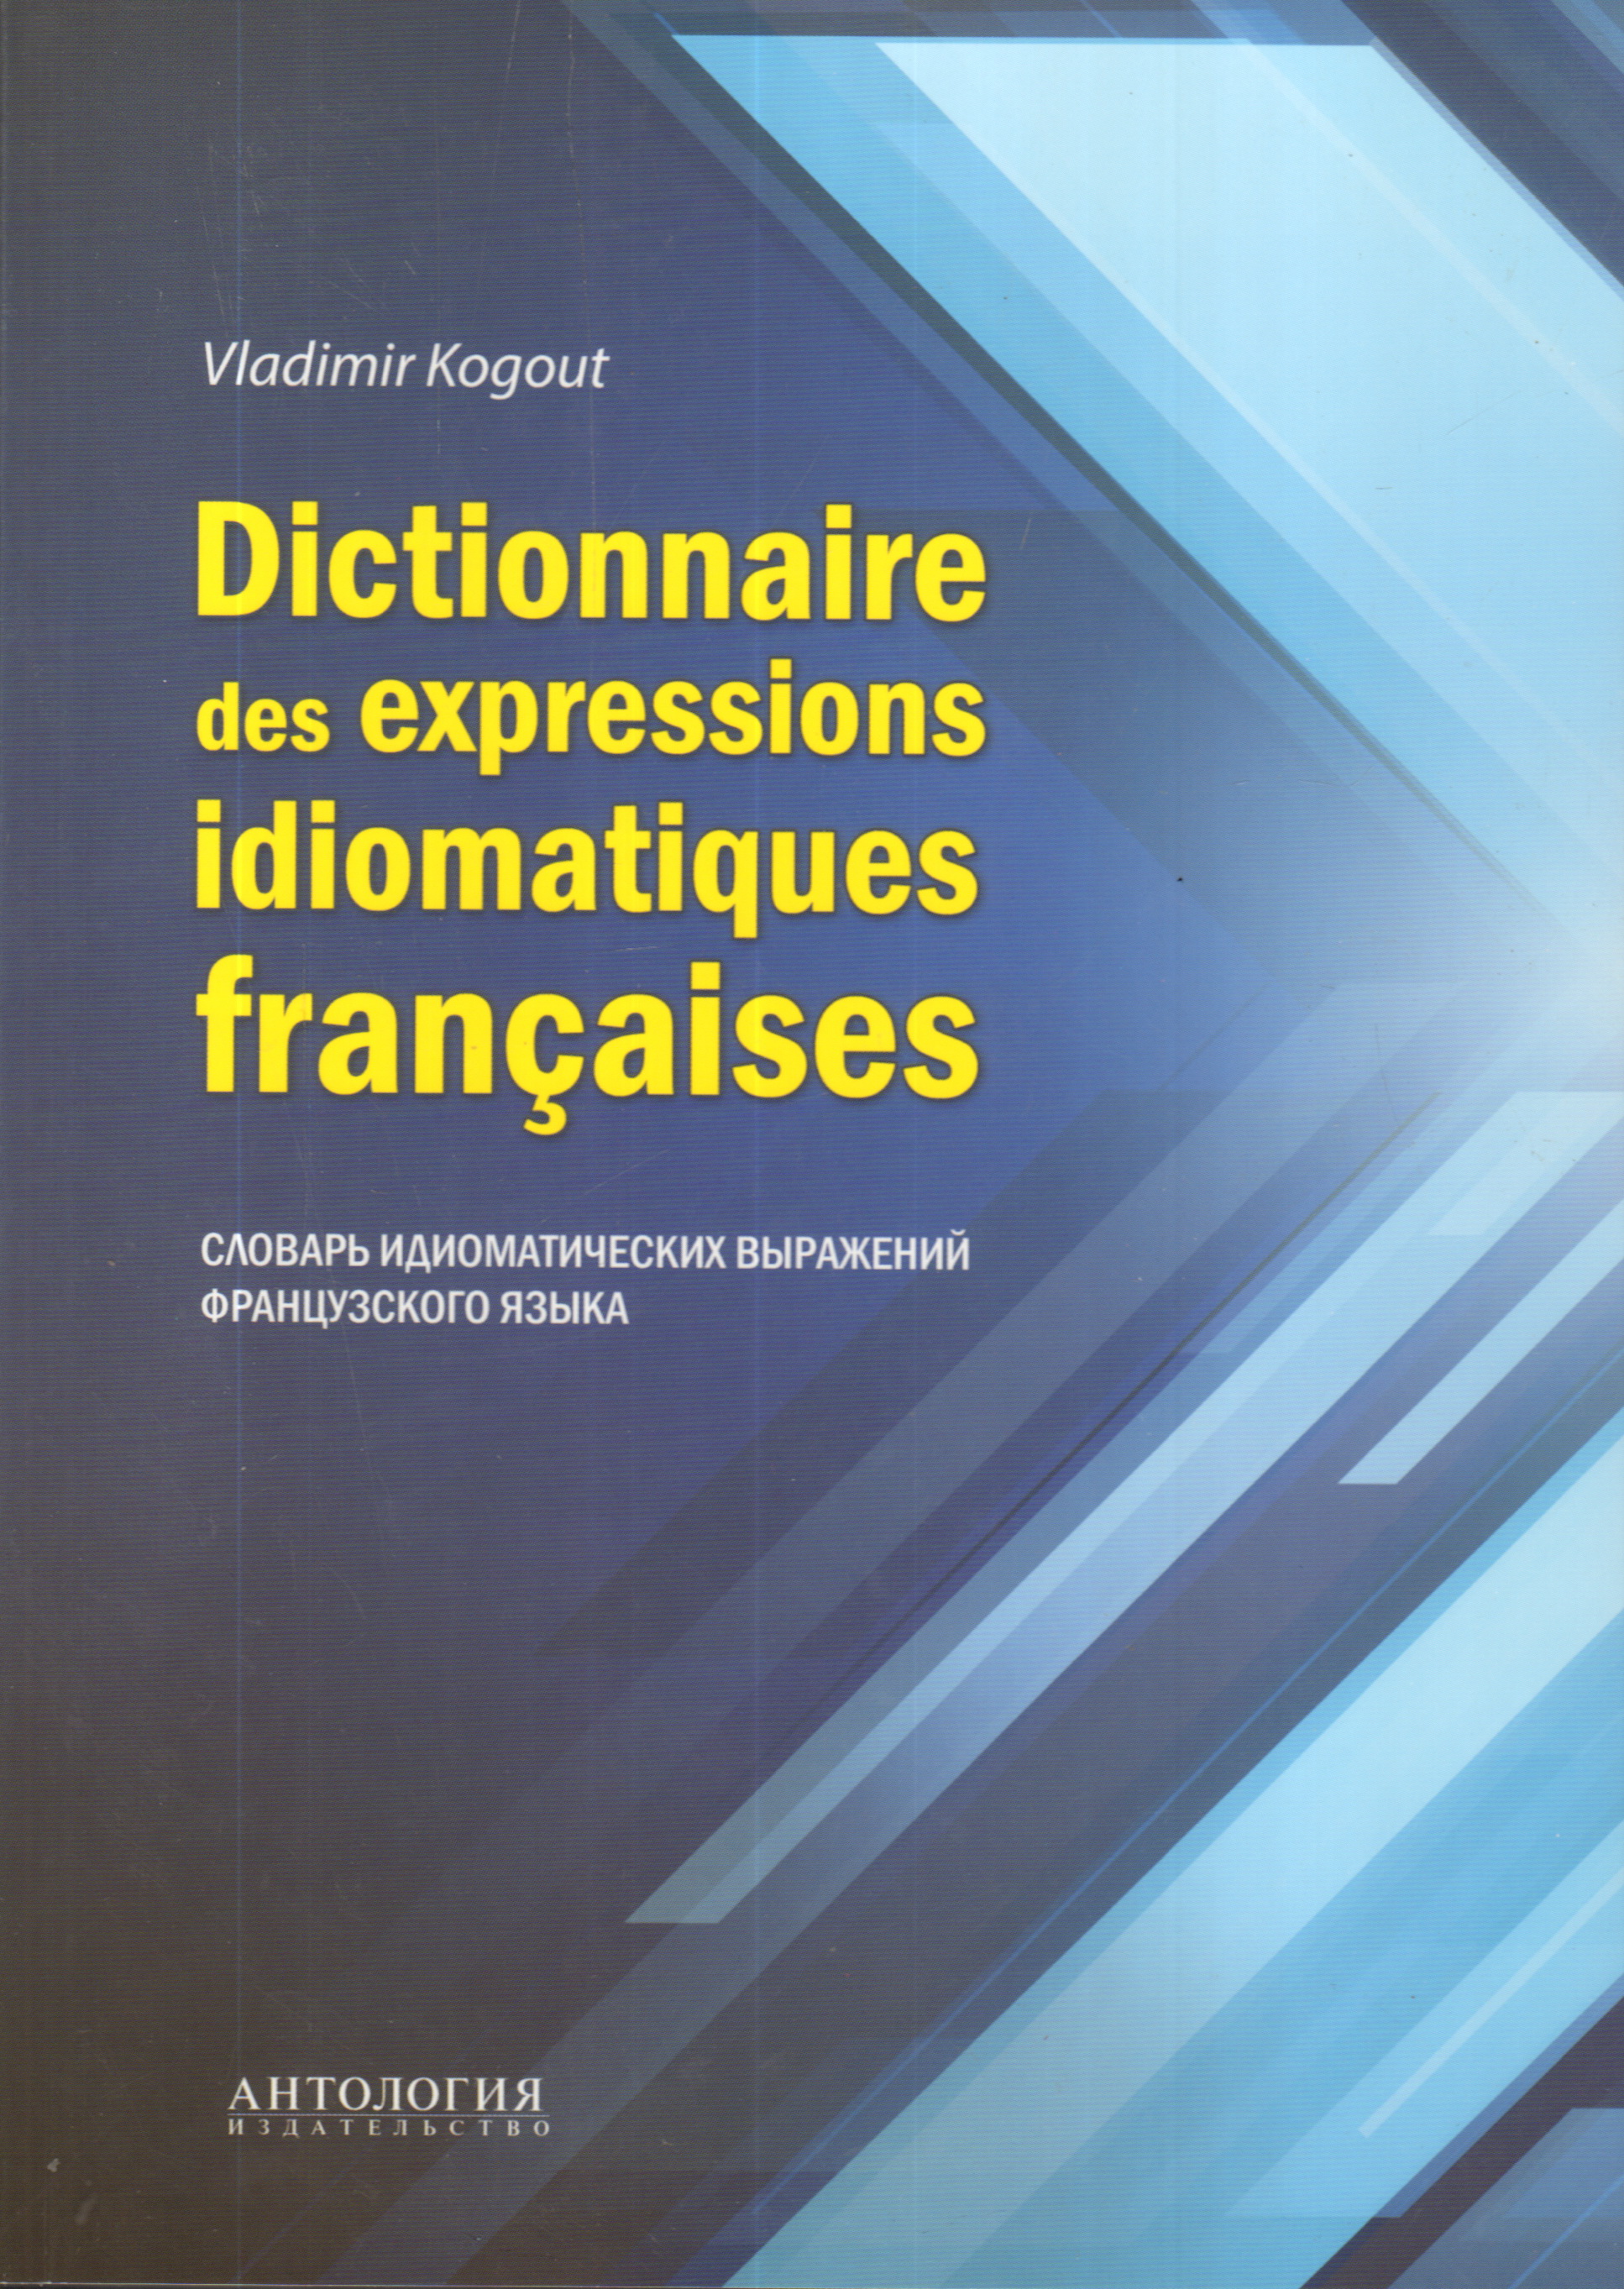 Dictionnaire des expressions idiomatiques francaises :    .  ..